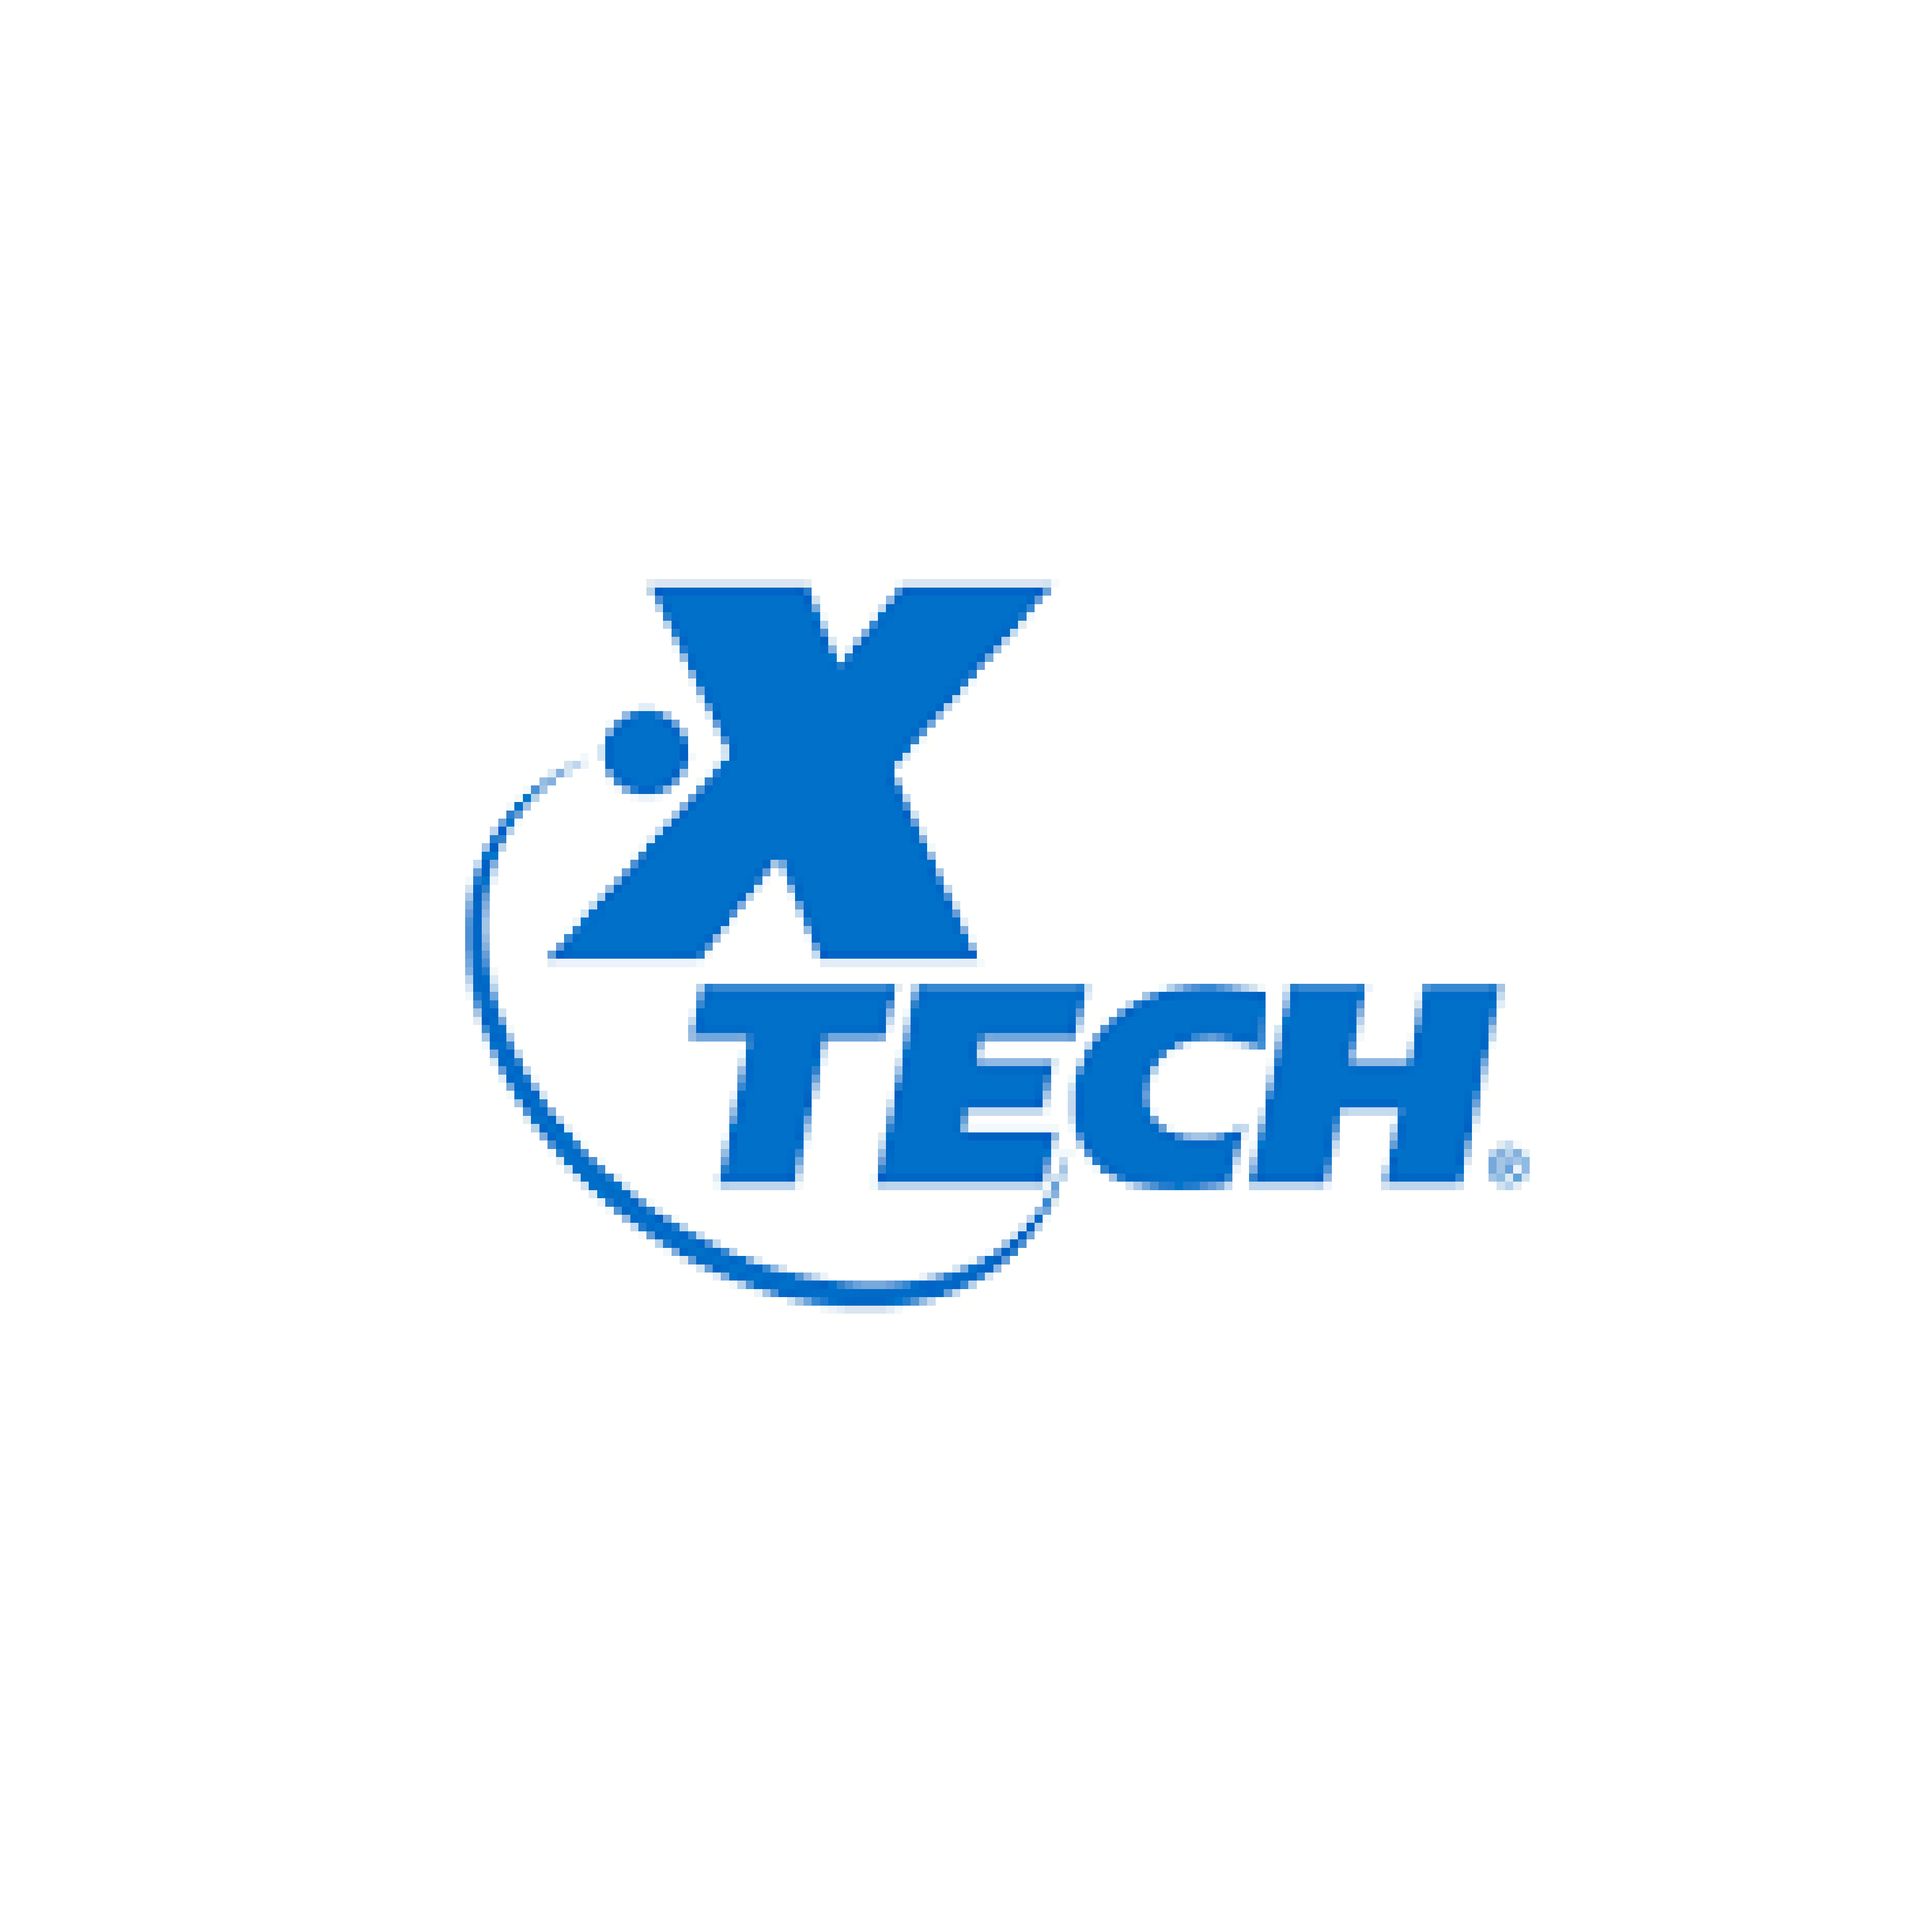 Marca: Xtech